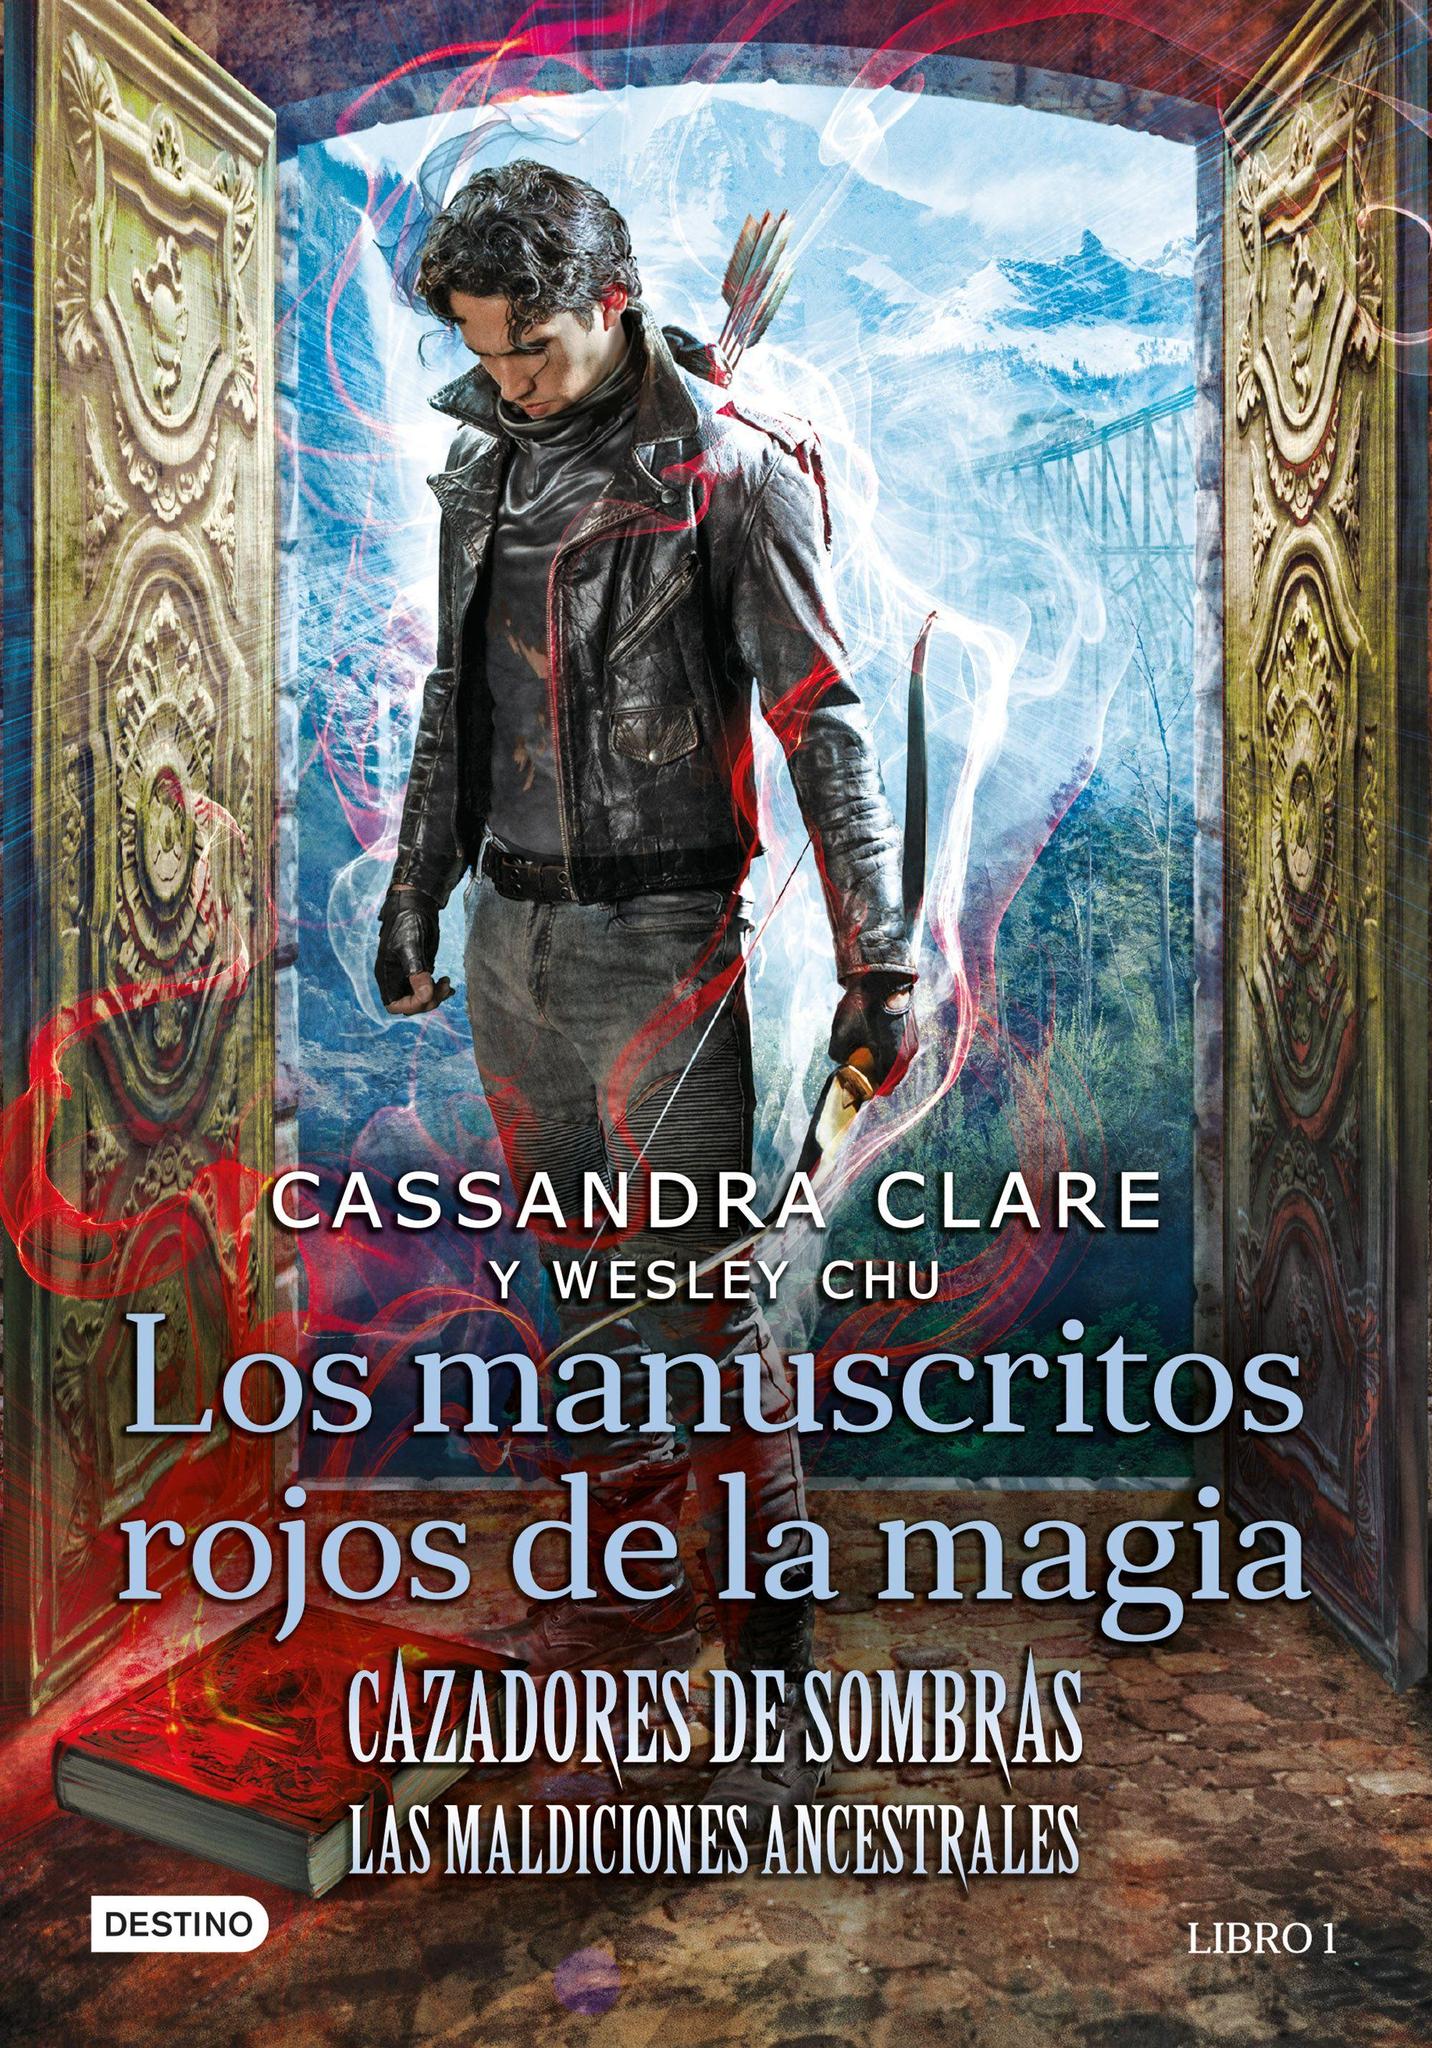 Cazadores de sombras: Los manuscritos rojos de la magia (Las Maldiciones Ancestrales 1) - Cassandra Clare